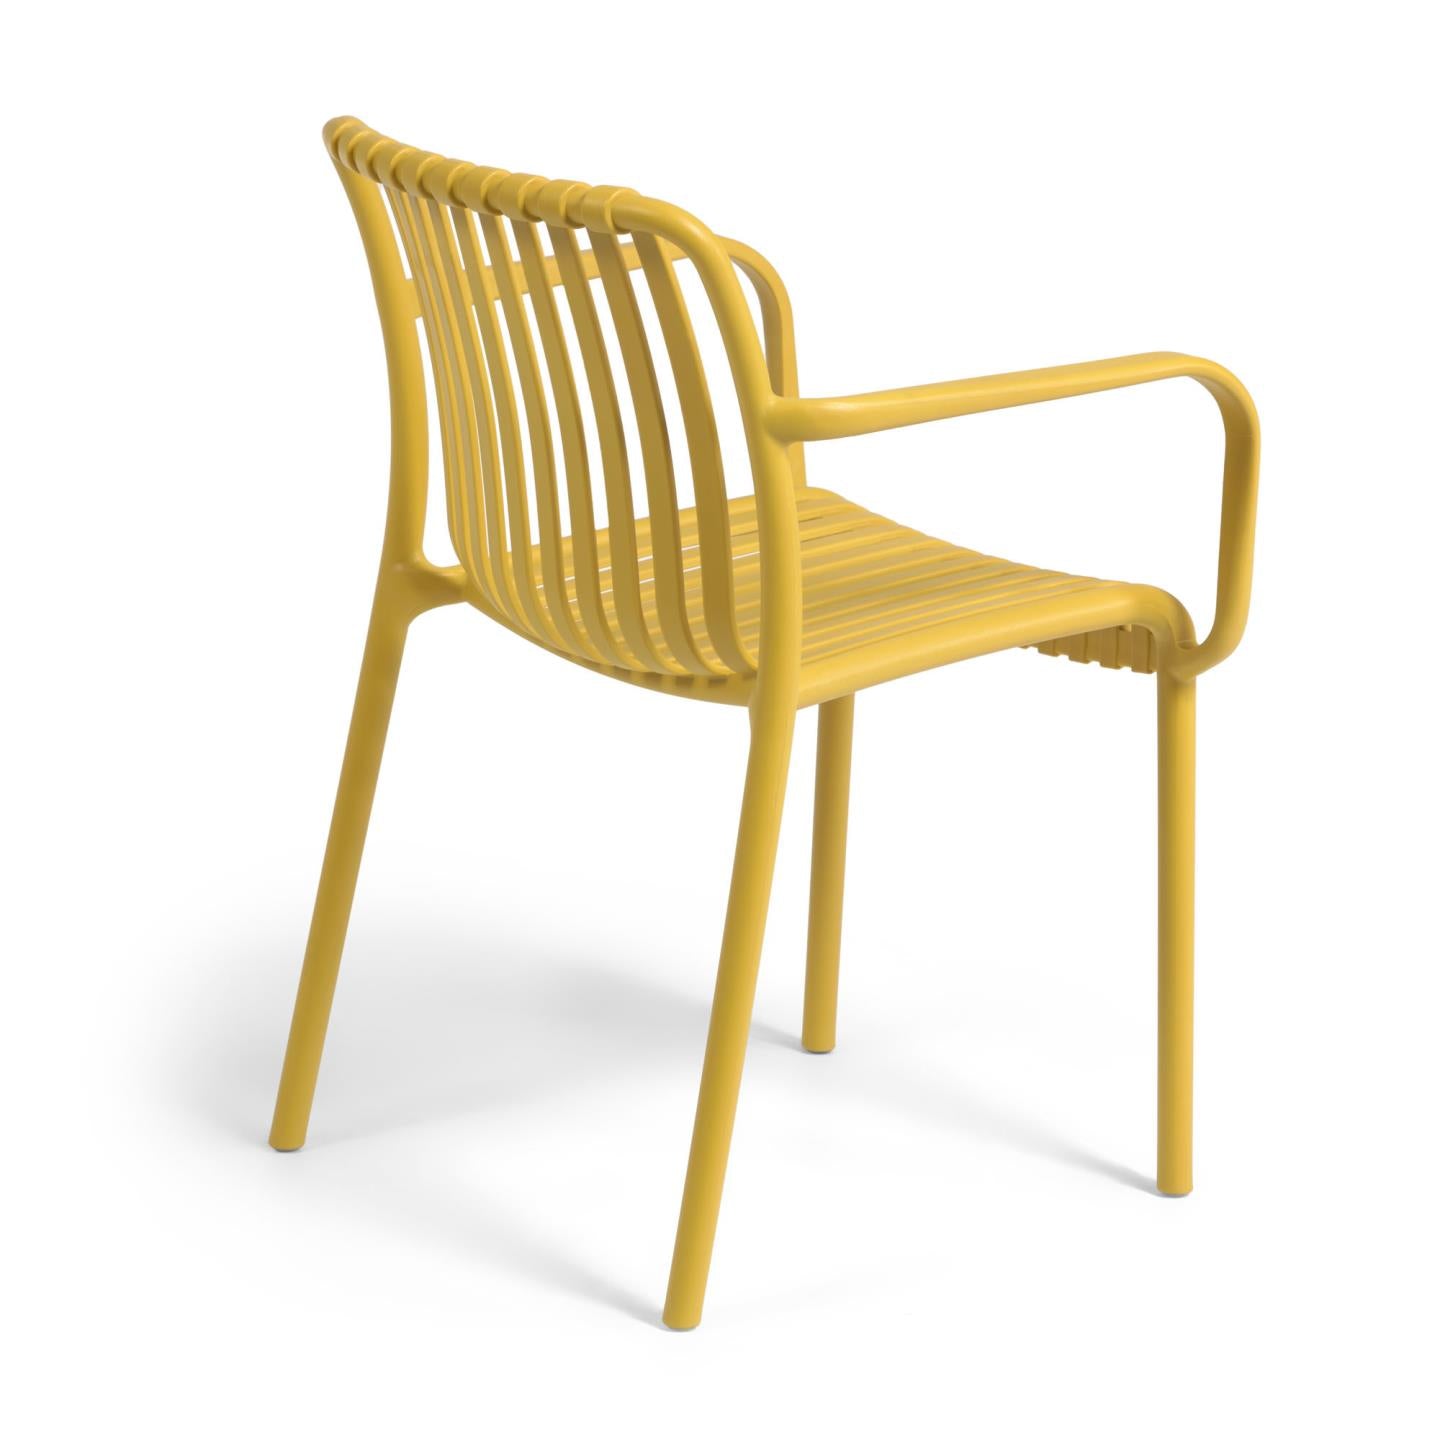 Isabellini egymásba rakható kültéri szék sárga színben